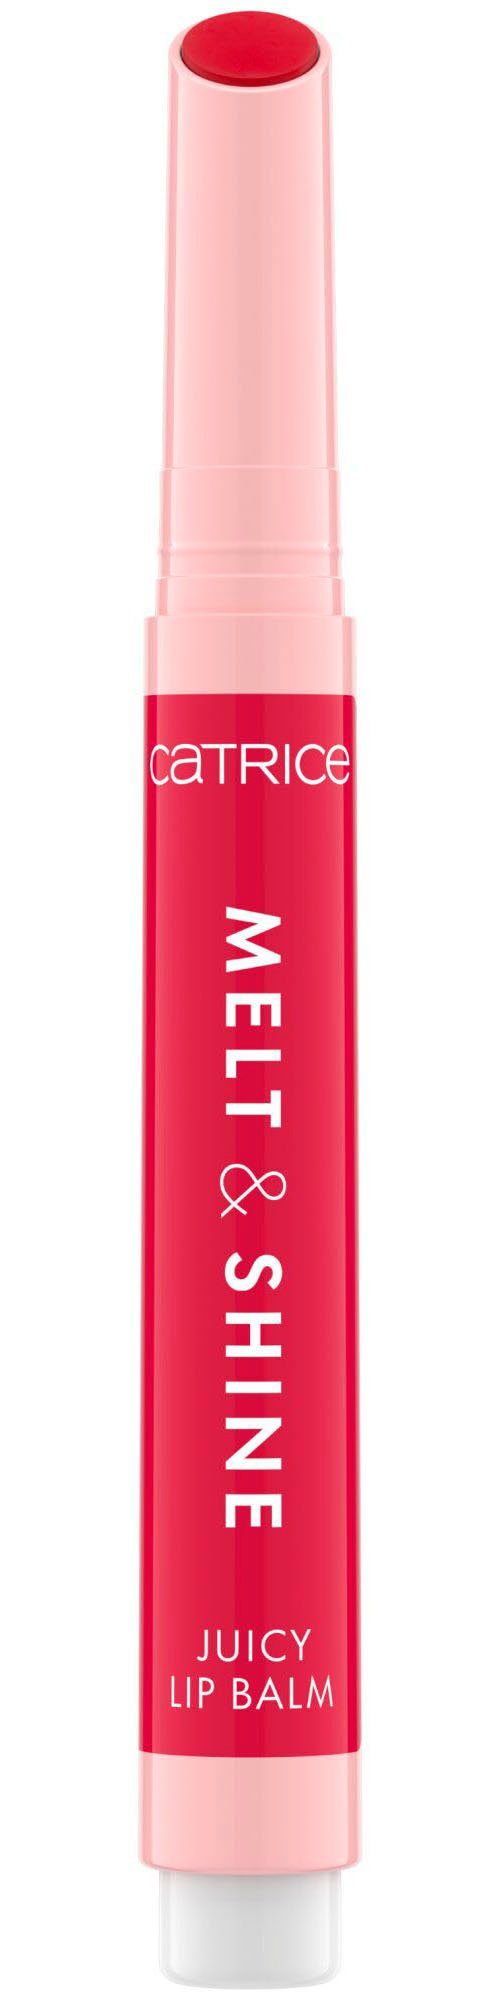 Catrice Lippenbalsam Melt & Juicy Lip 3-tlg., ohne glutenfrei Nanopartikel Shine vegan, frei, Balm, Parabene, ölfrei